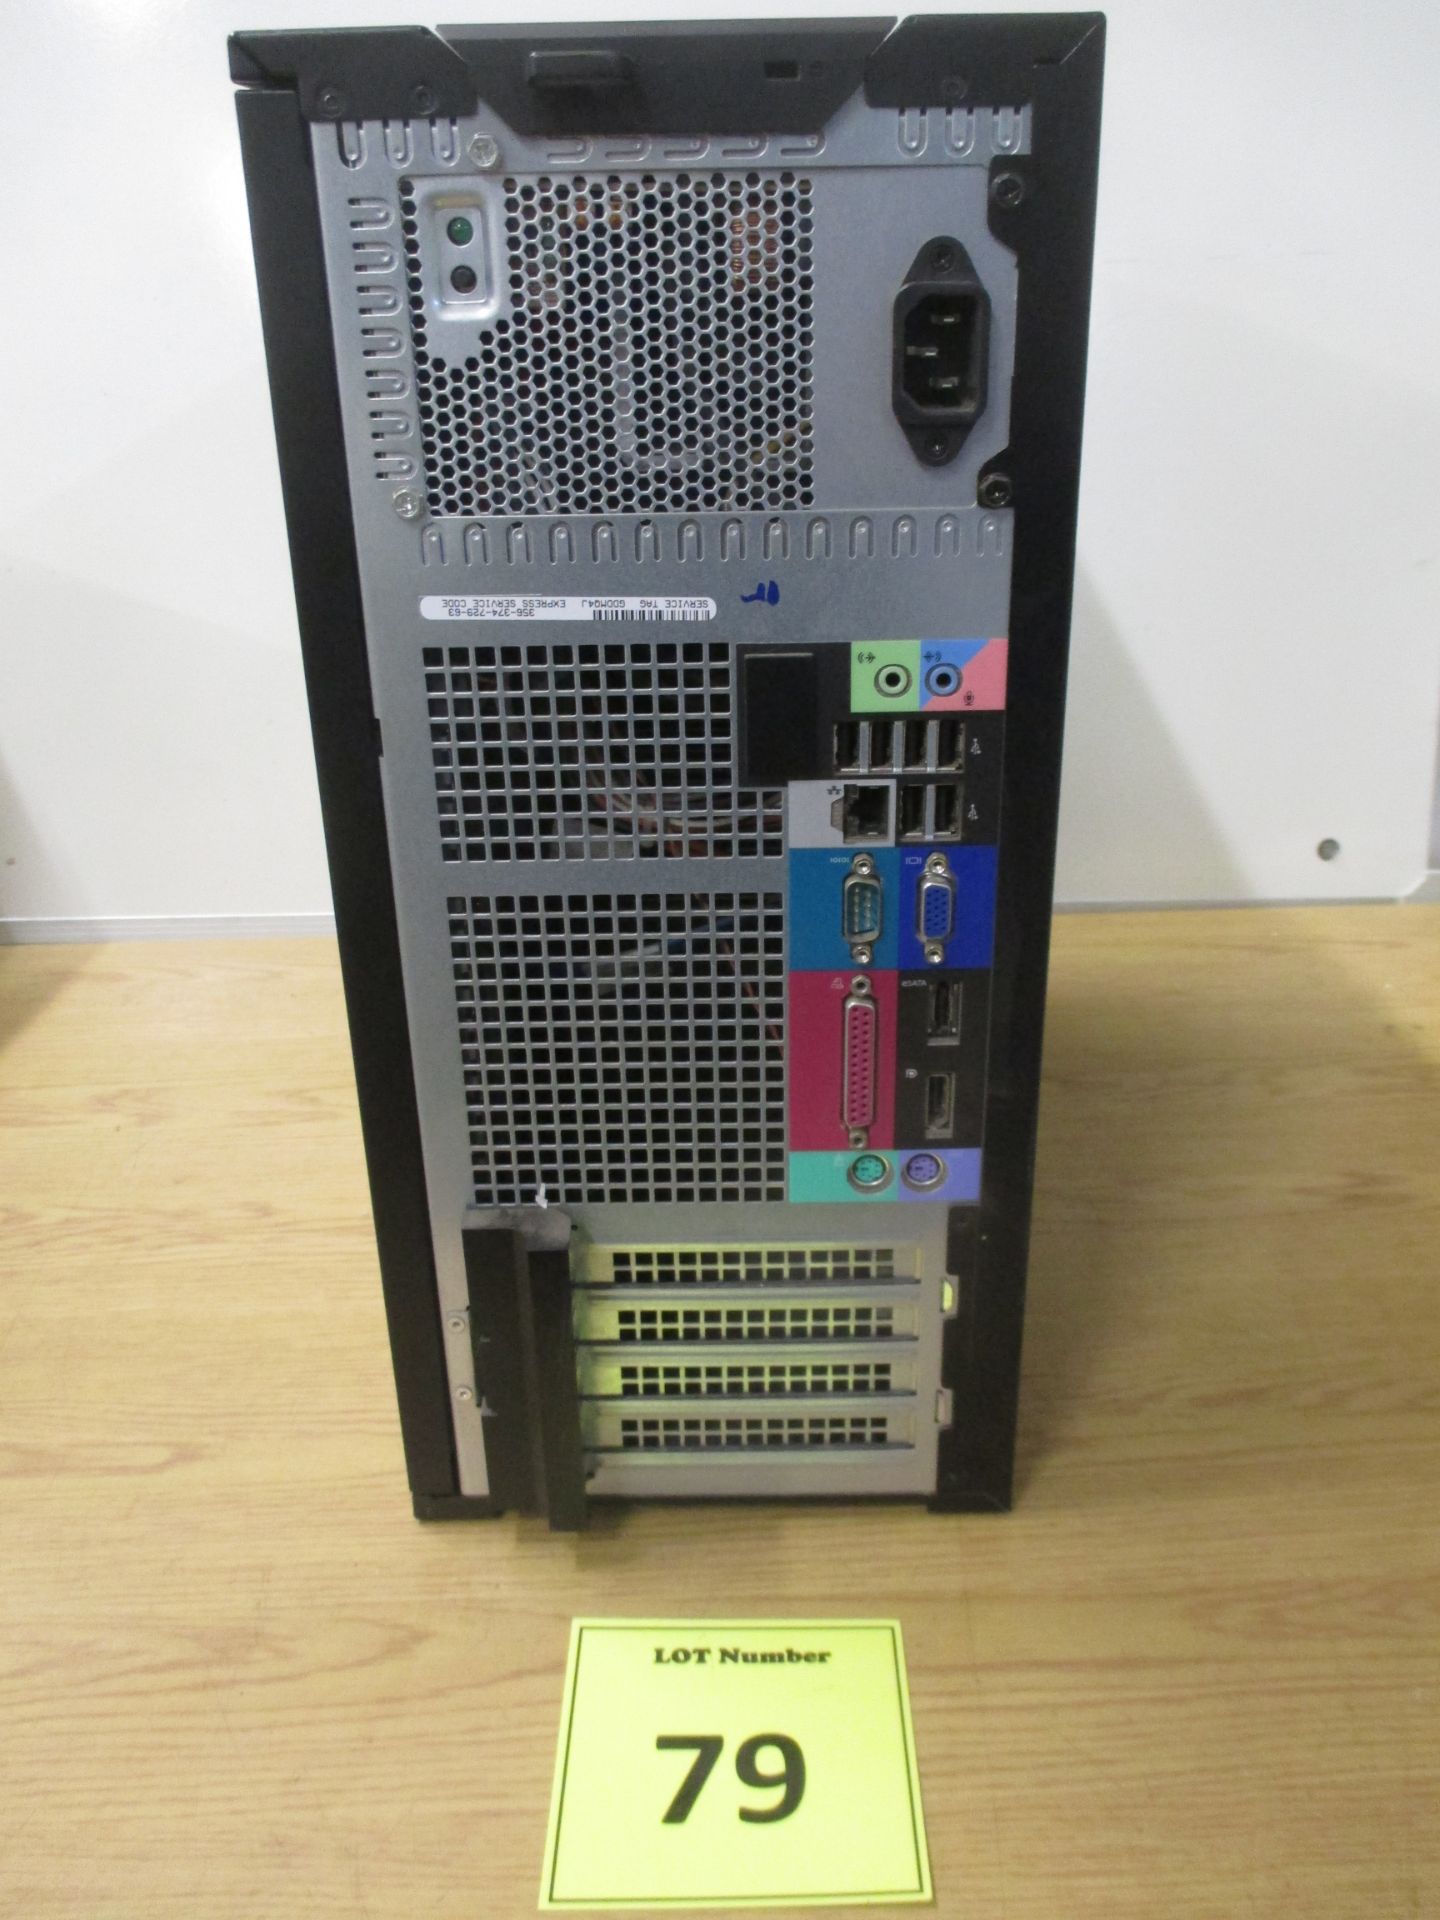 DELL OPTIPLEX 960 TOWER COMPUTER. CORE 2 DUO 3.16 GHZ PROCESSOR (E8500), 4GB RAM, 250GB SATA HDD, - Image 2 of 2